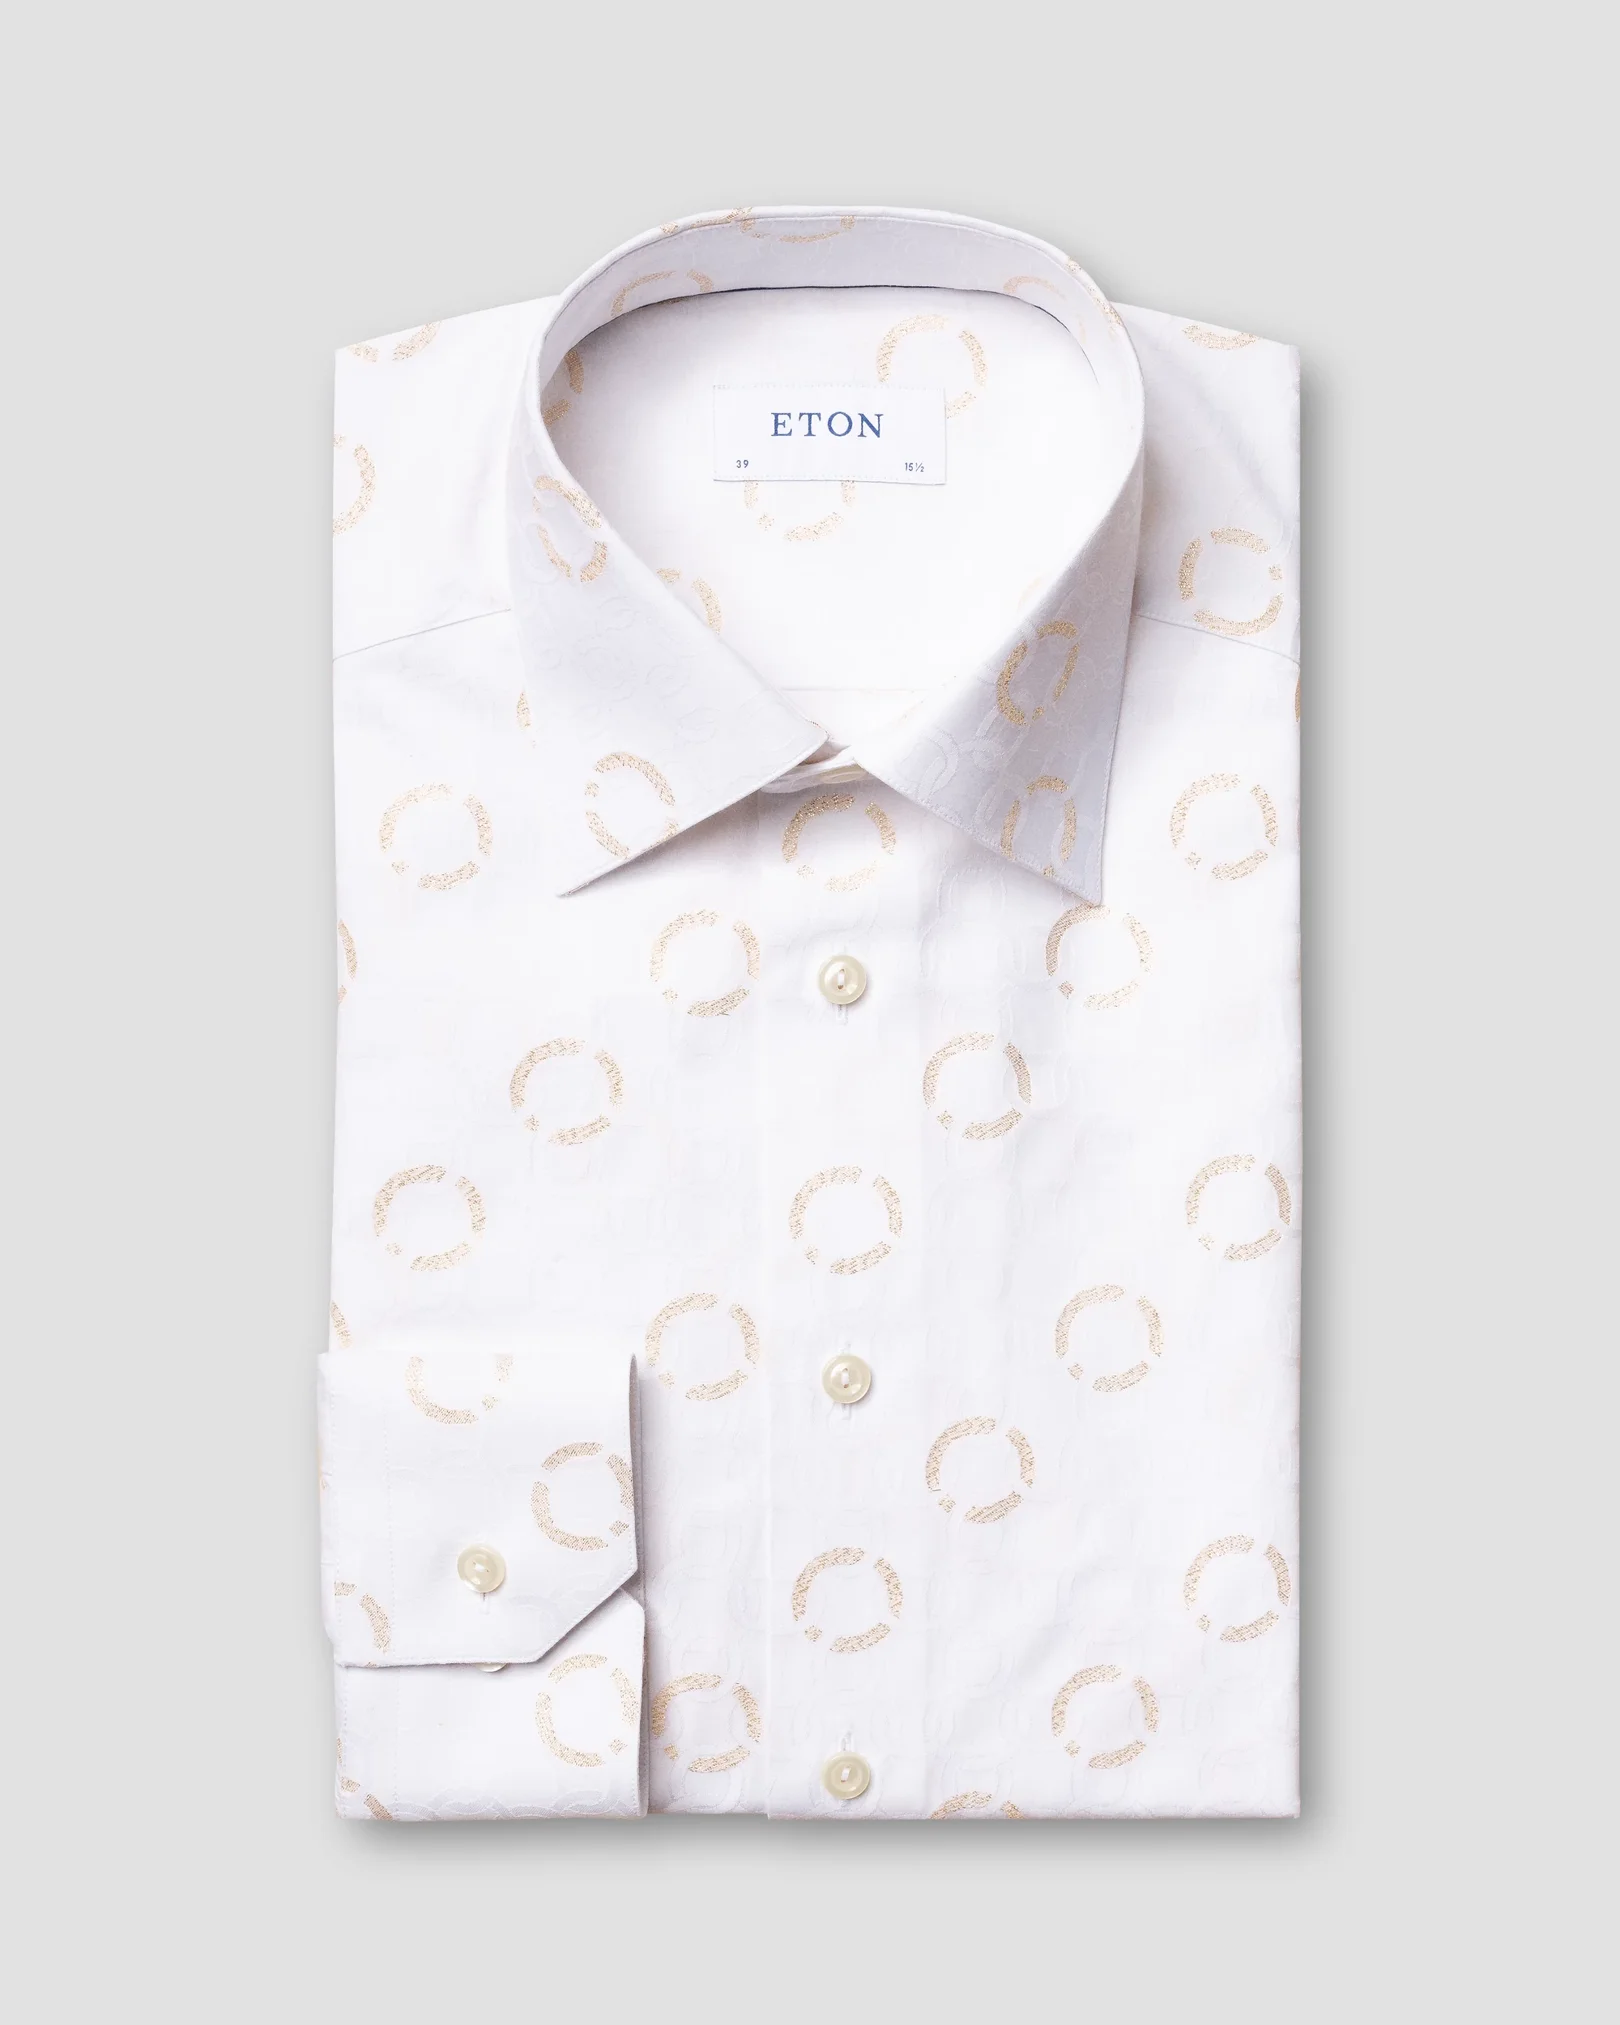 Eton - white fil coupe tuxedo shirt